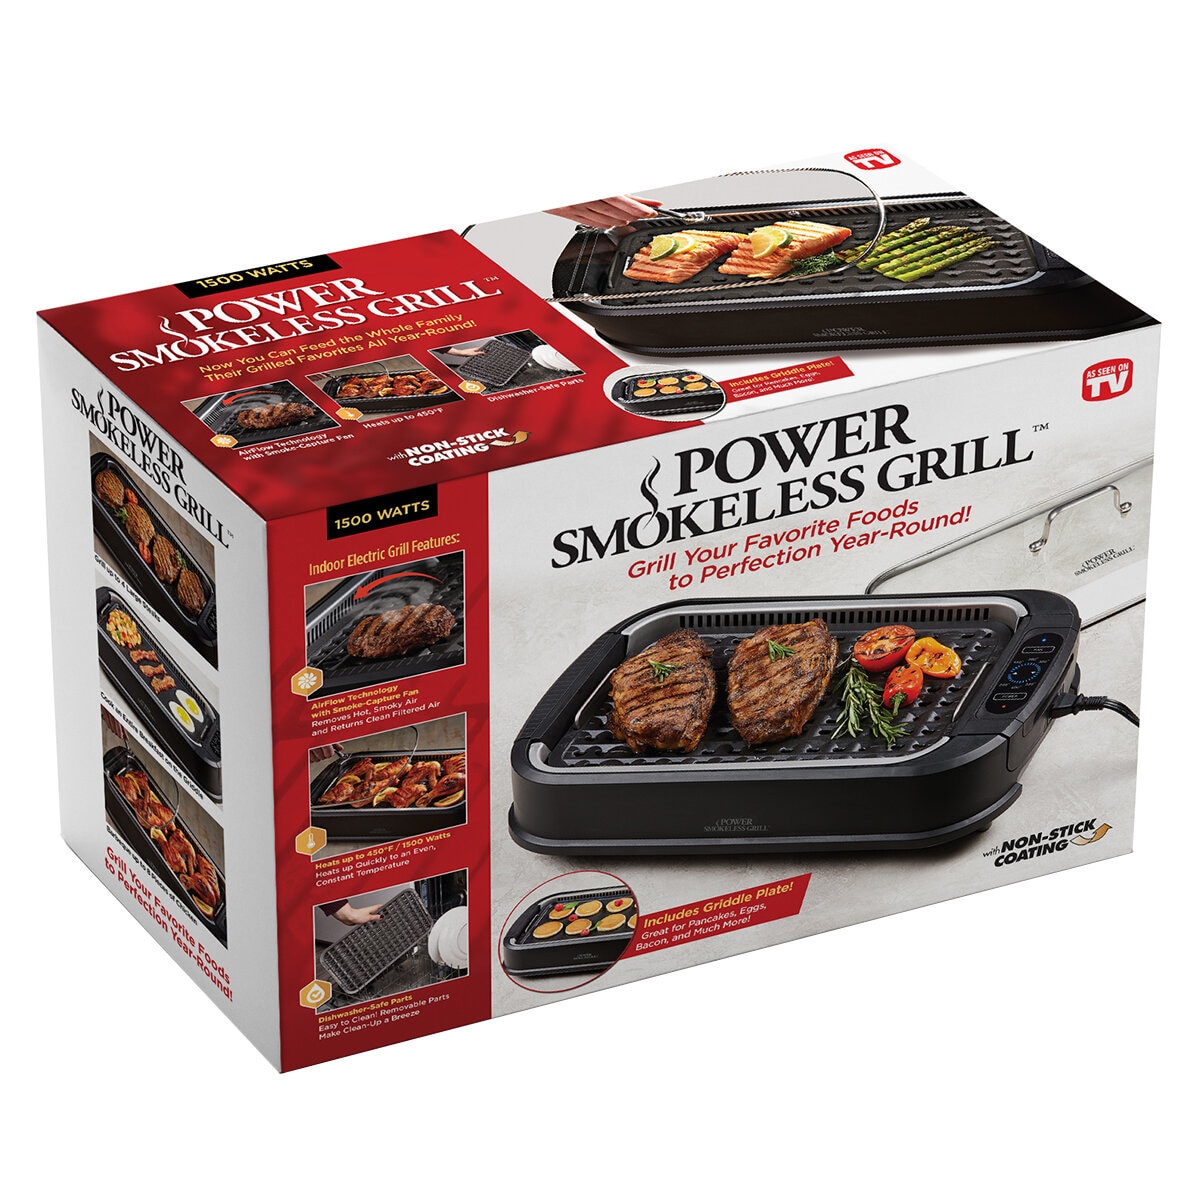 PowerXL Smokeless Grill |